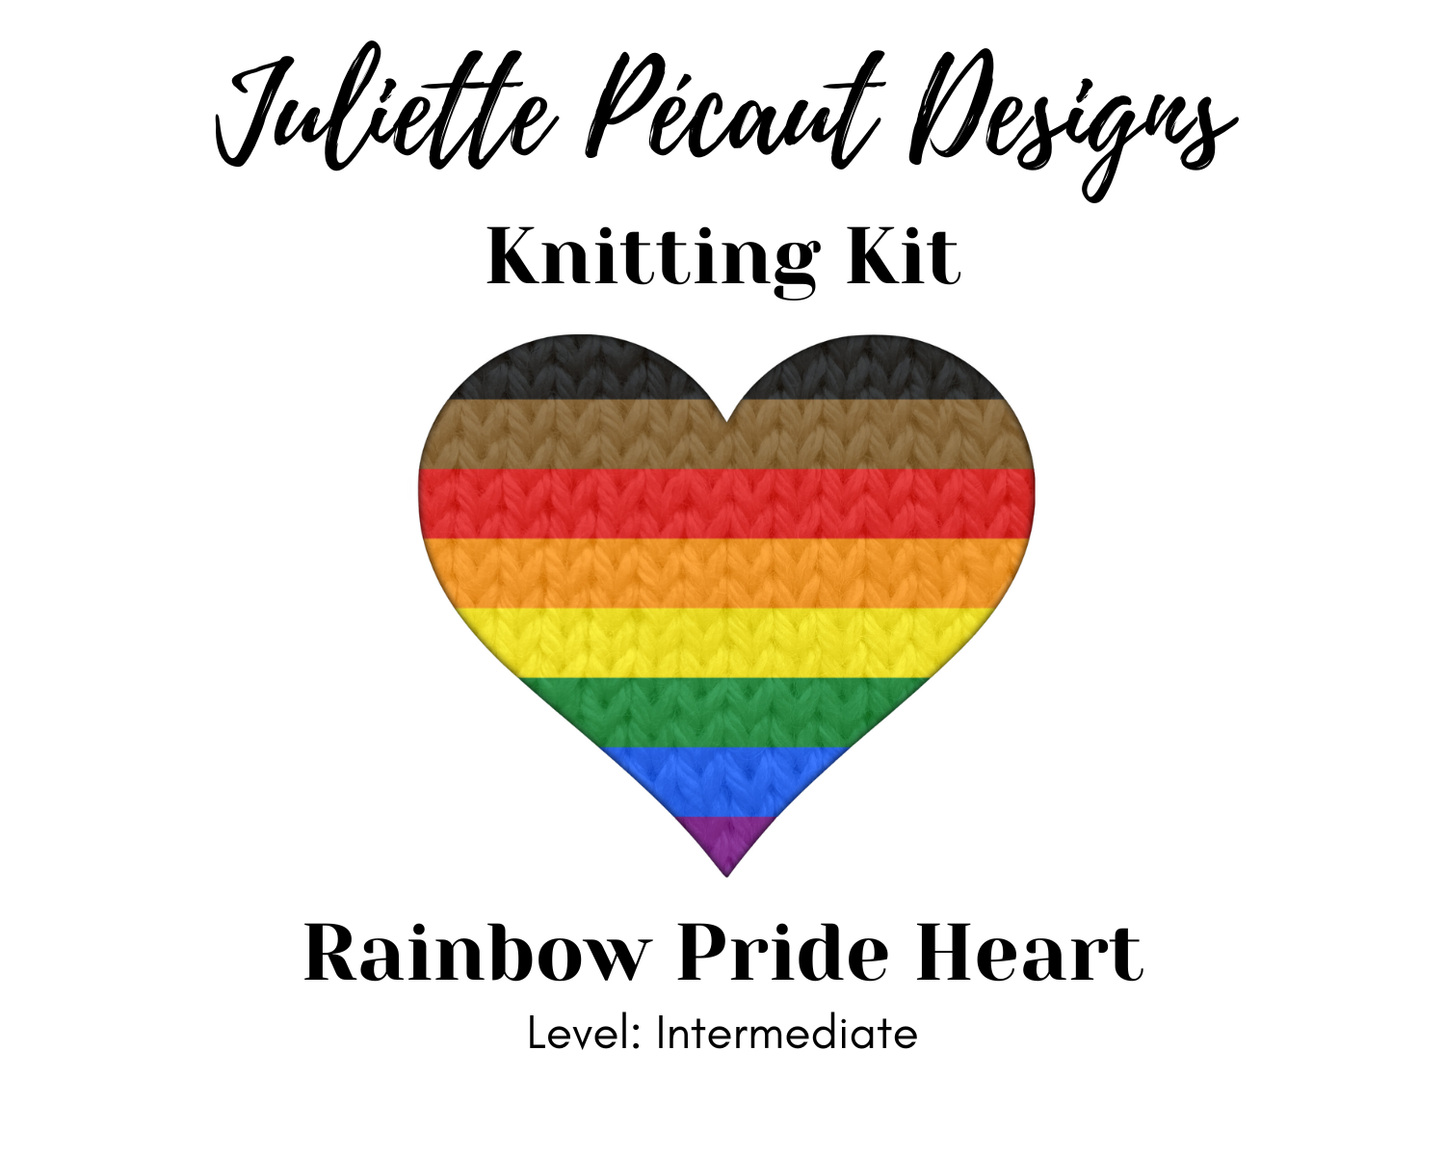 Pride Hearts knitting kits